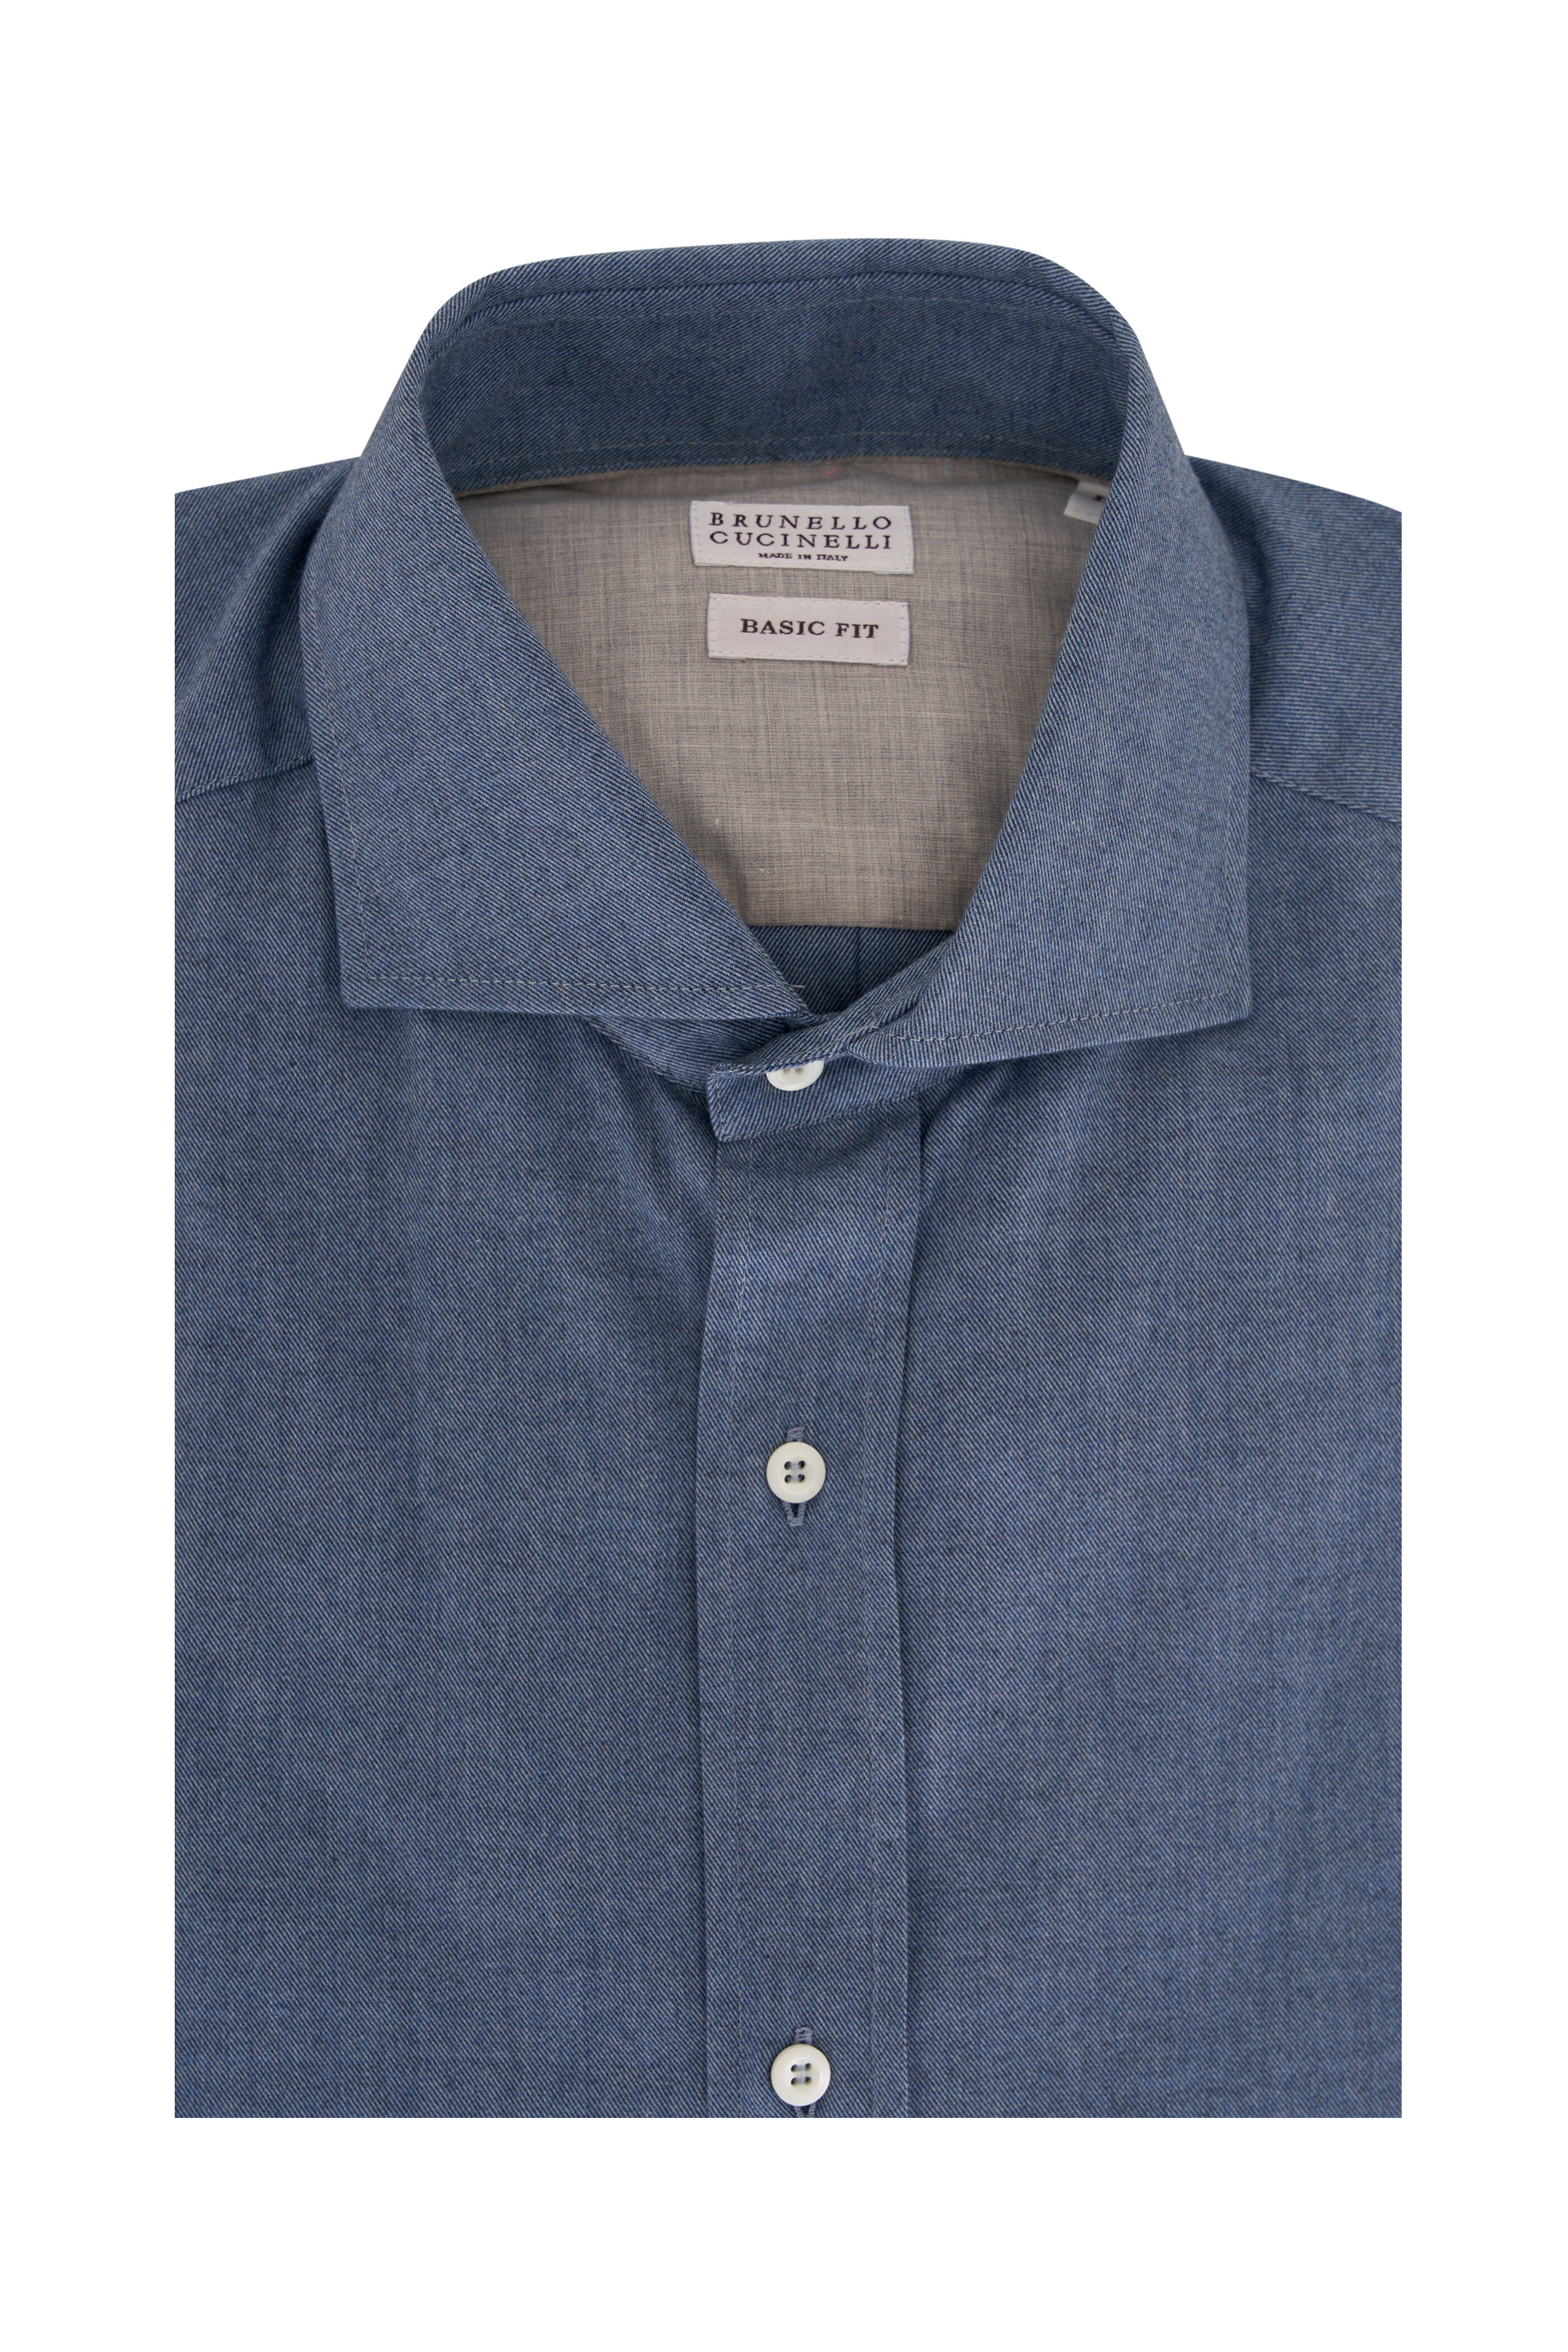 Brunello Cucinelli - Solid Blue Cotton Flannel Sport Shirt